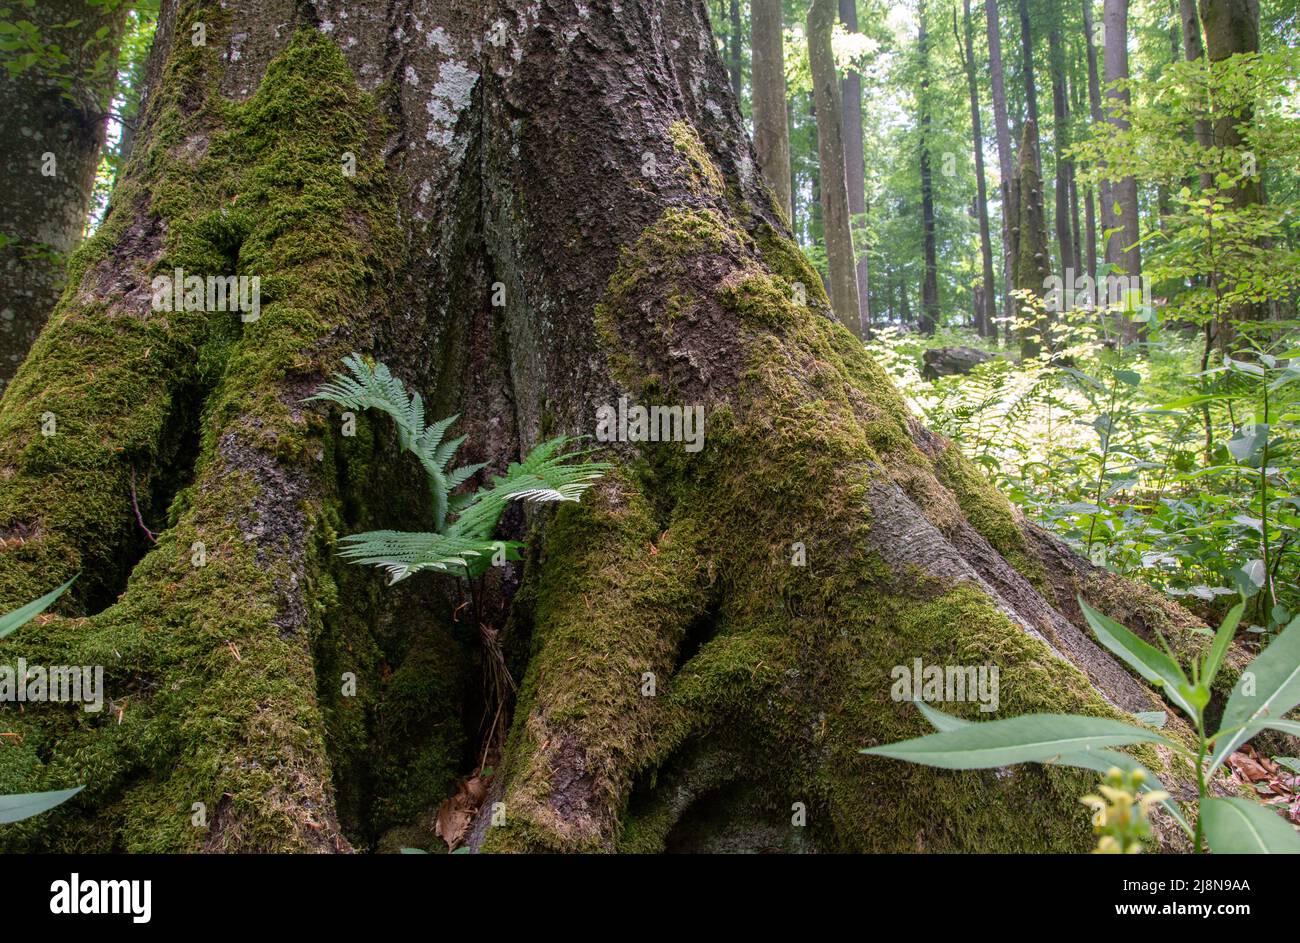 Krokar primeval, virgin forest in Kočevje, Slovenia. Year 2021. Horizontal photo. Stock Photo